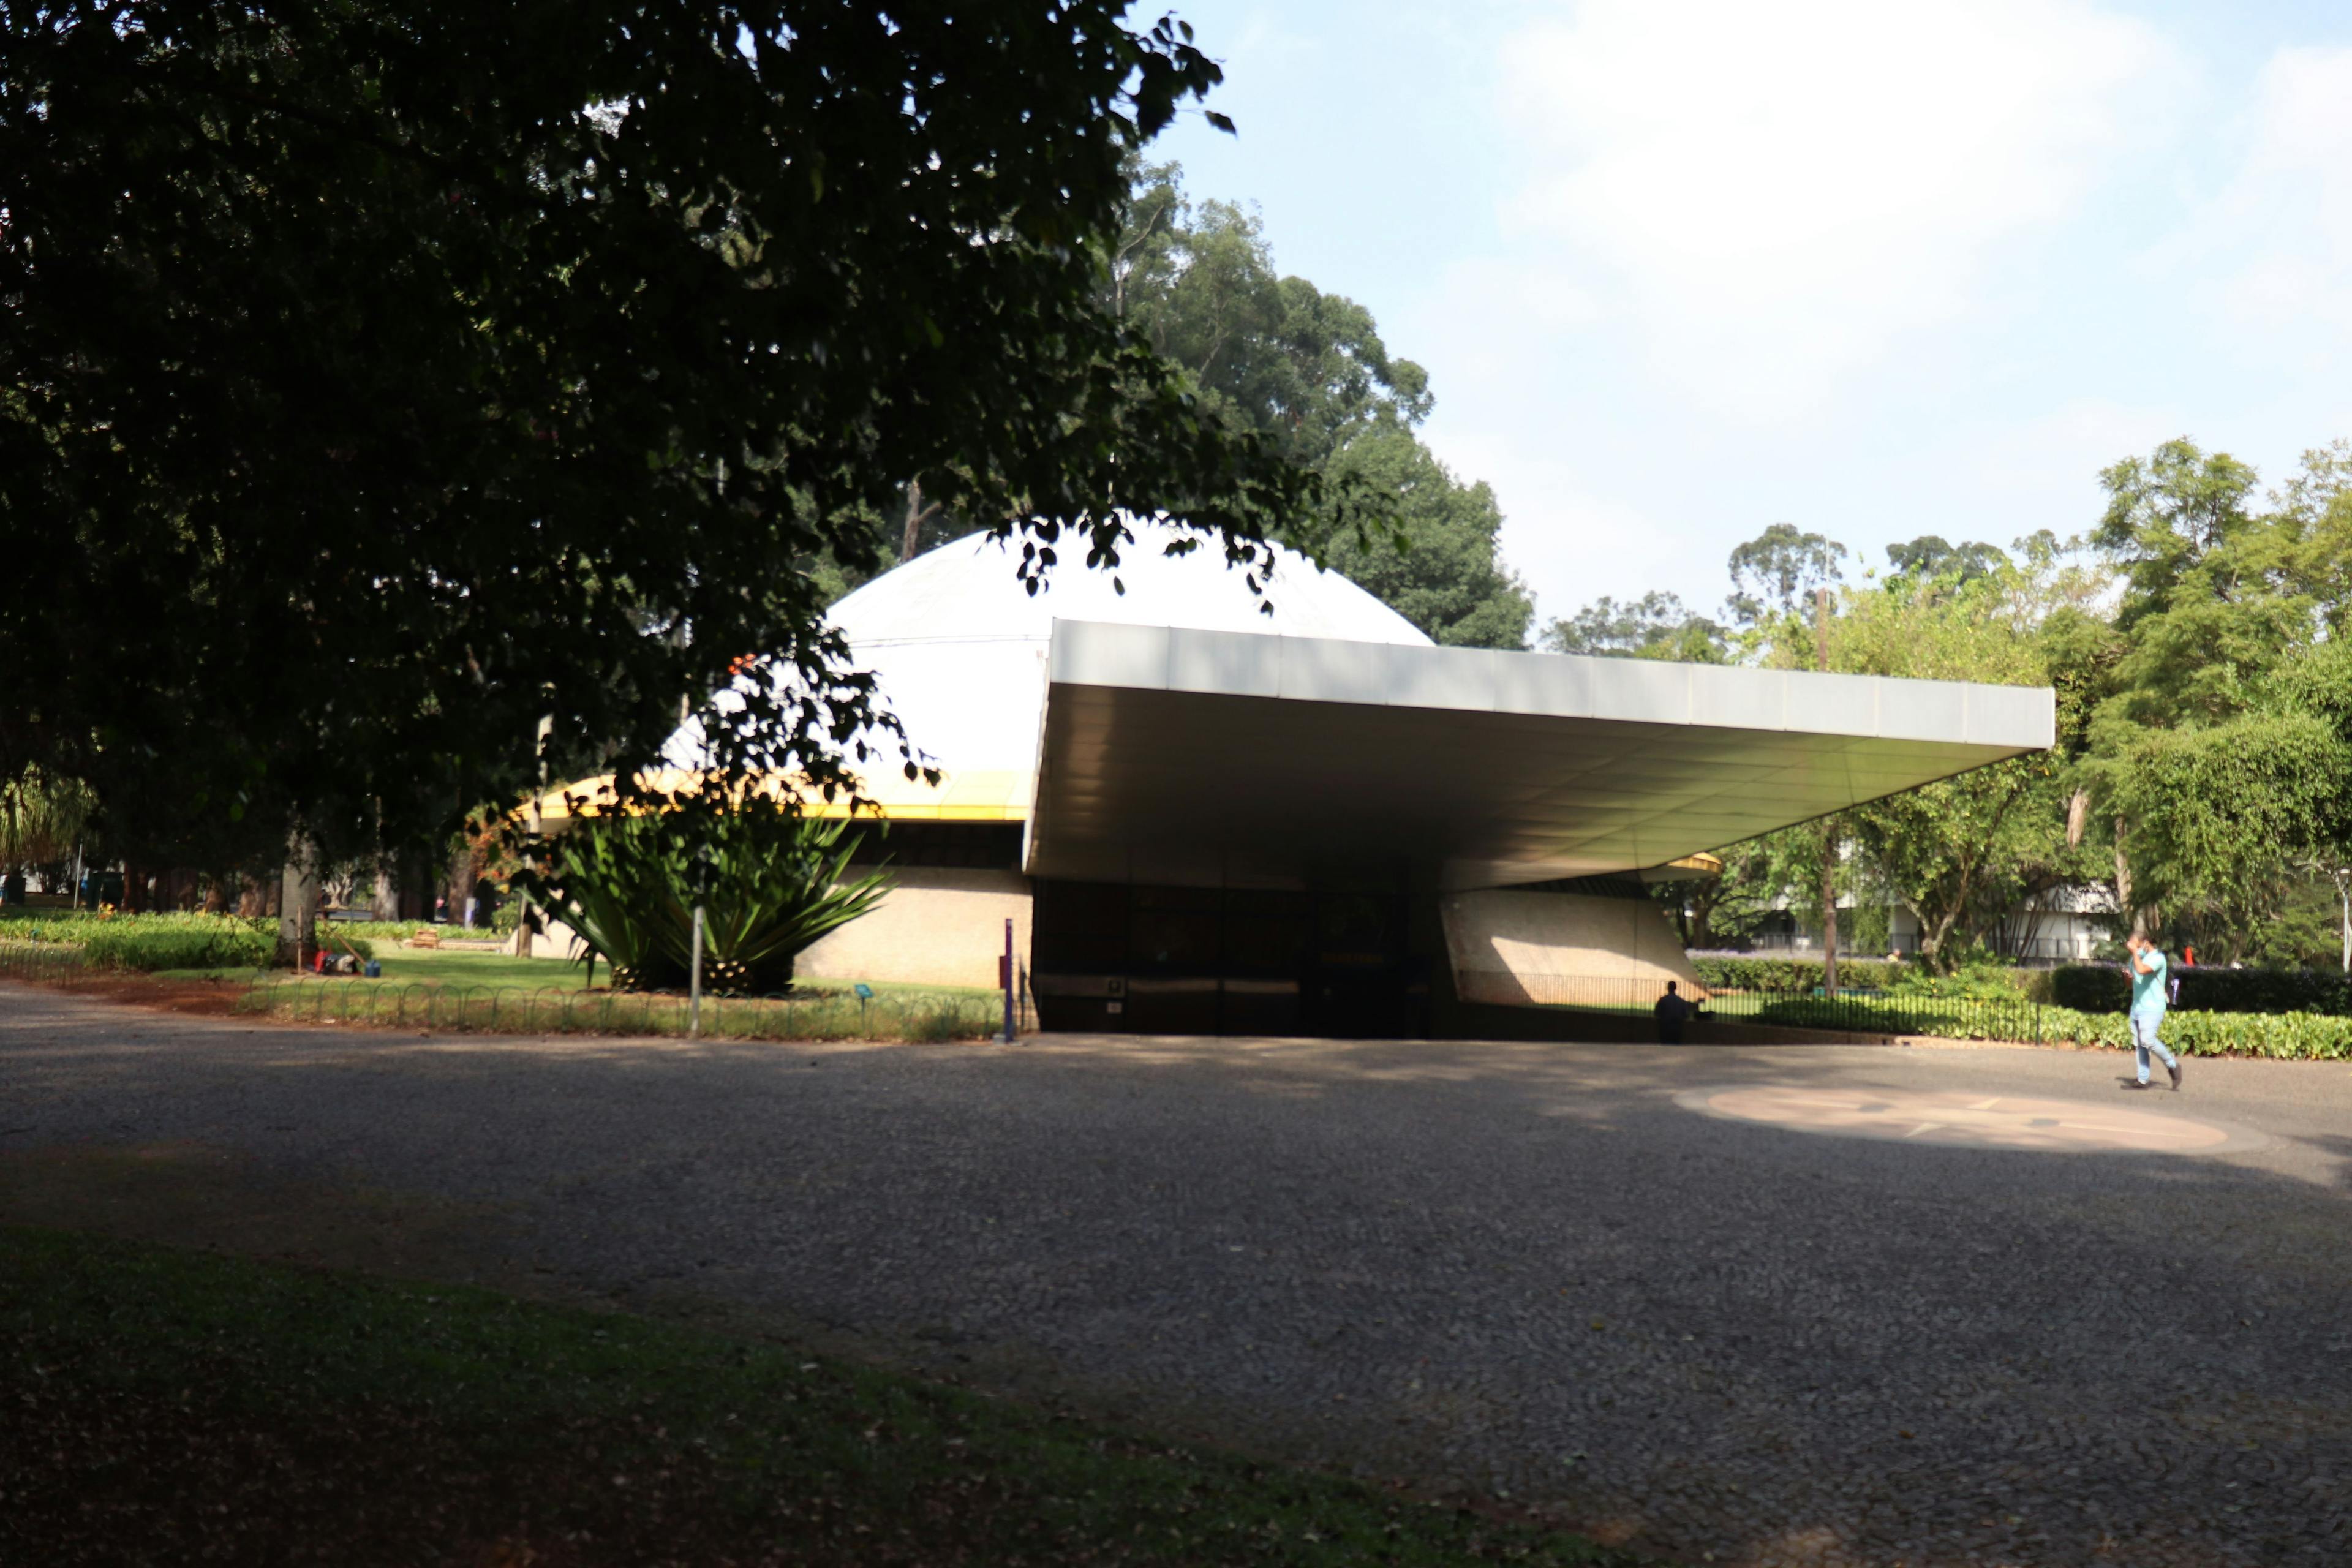 Sessão comemorativa ‘Apolo 11’ no Planetário e confecção de carimbos com elementos da natureza no MAM são os destaques da agenda cultural do Parque Ibirapuera